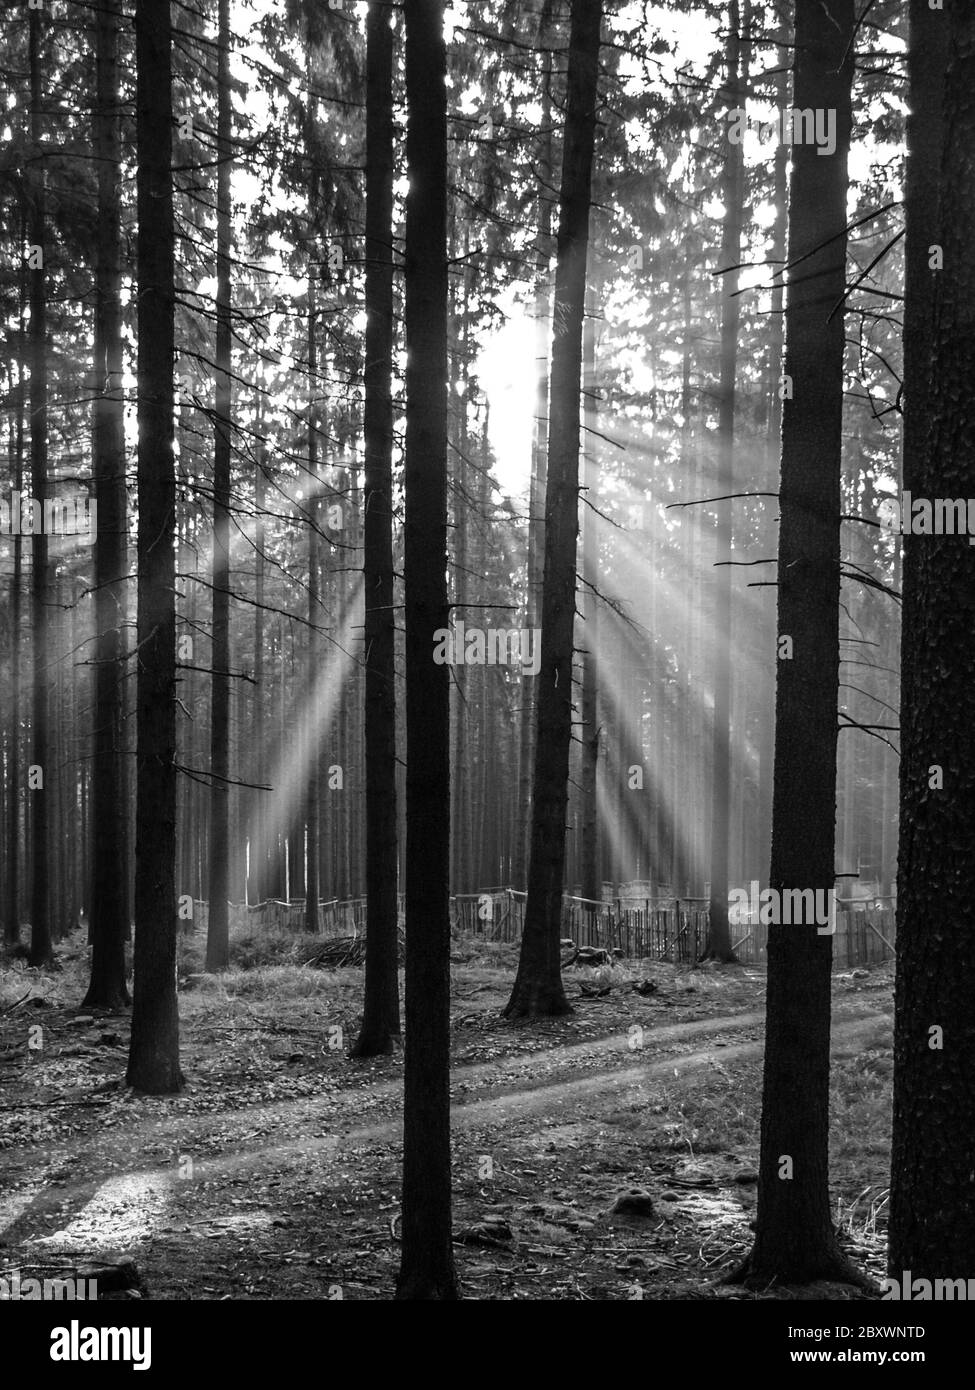 Raggi di sole luminosi che brillano attraverso la foresta di abete rosso. Immagine in bianco e nero. Foto Stock